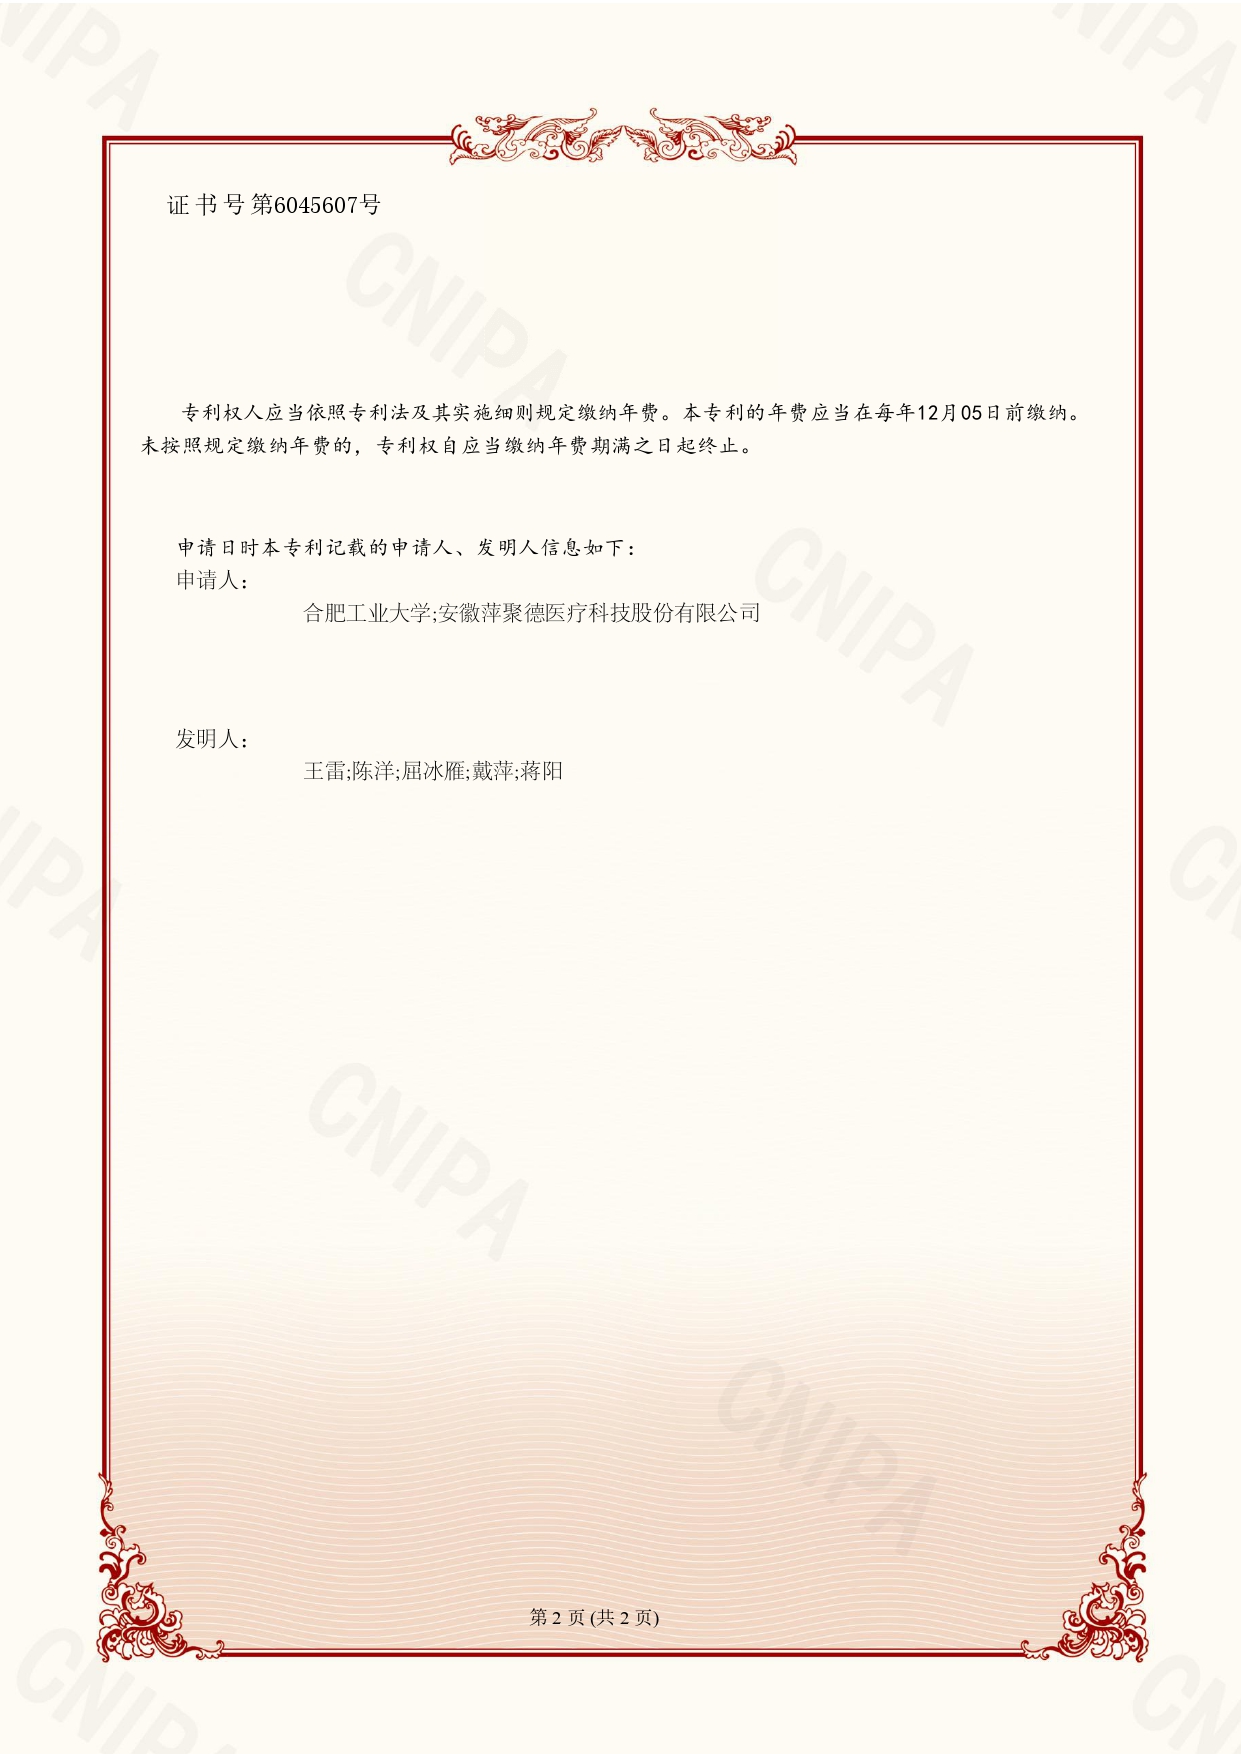 XDPCN222360-发明专利证书——胶囊标记物_page-0002.jpg